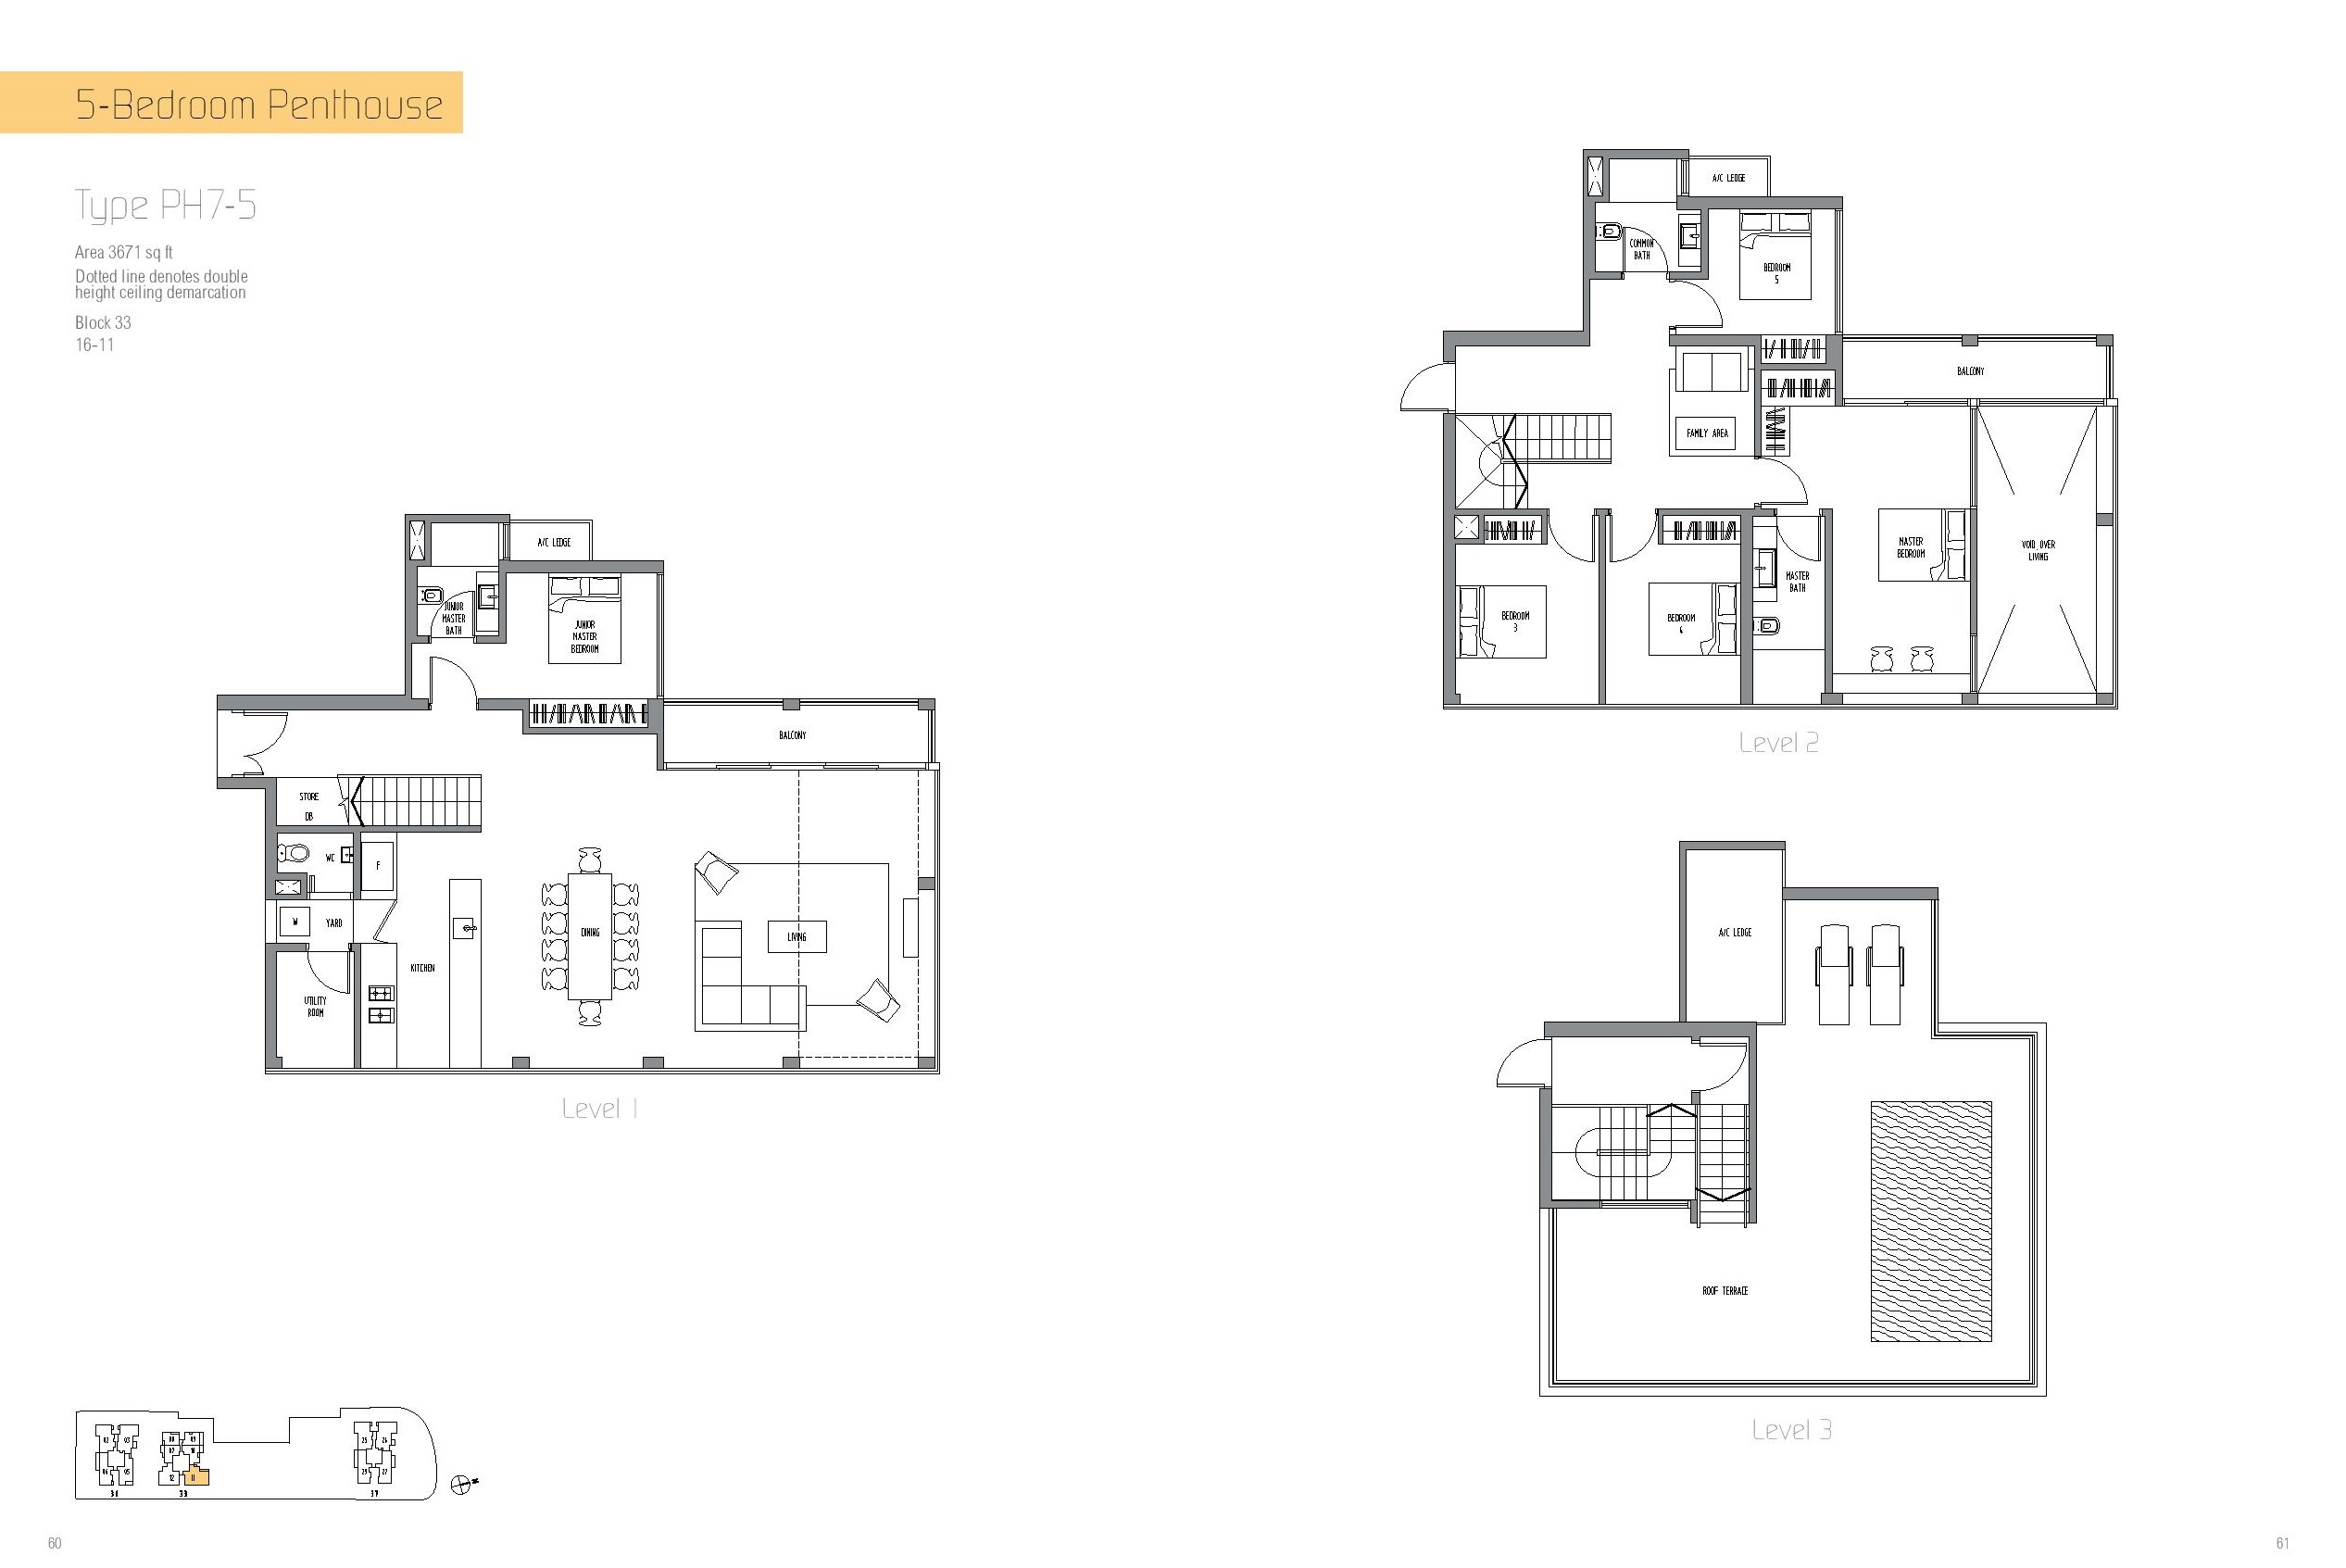 Sennett Residence 5 Bedroom Penthouse Type PH7-5 Floor Plan